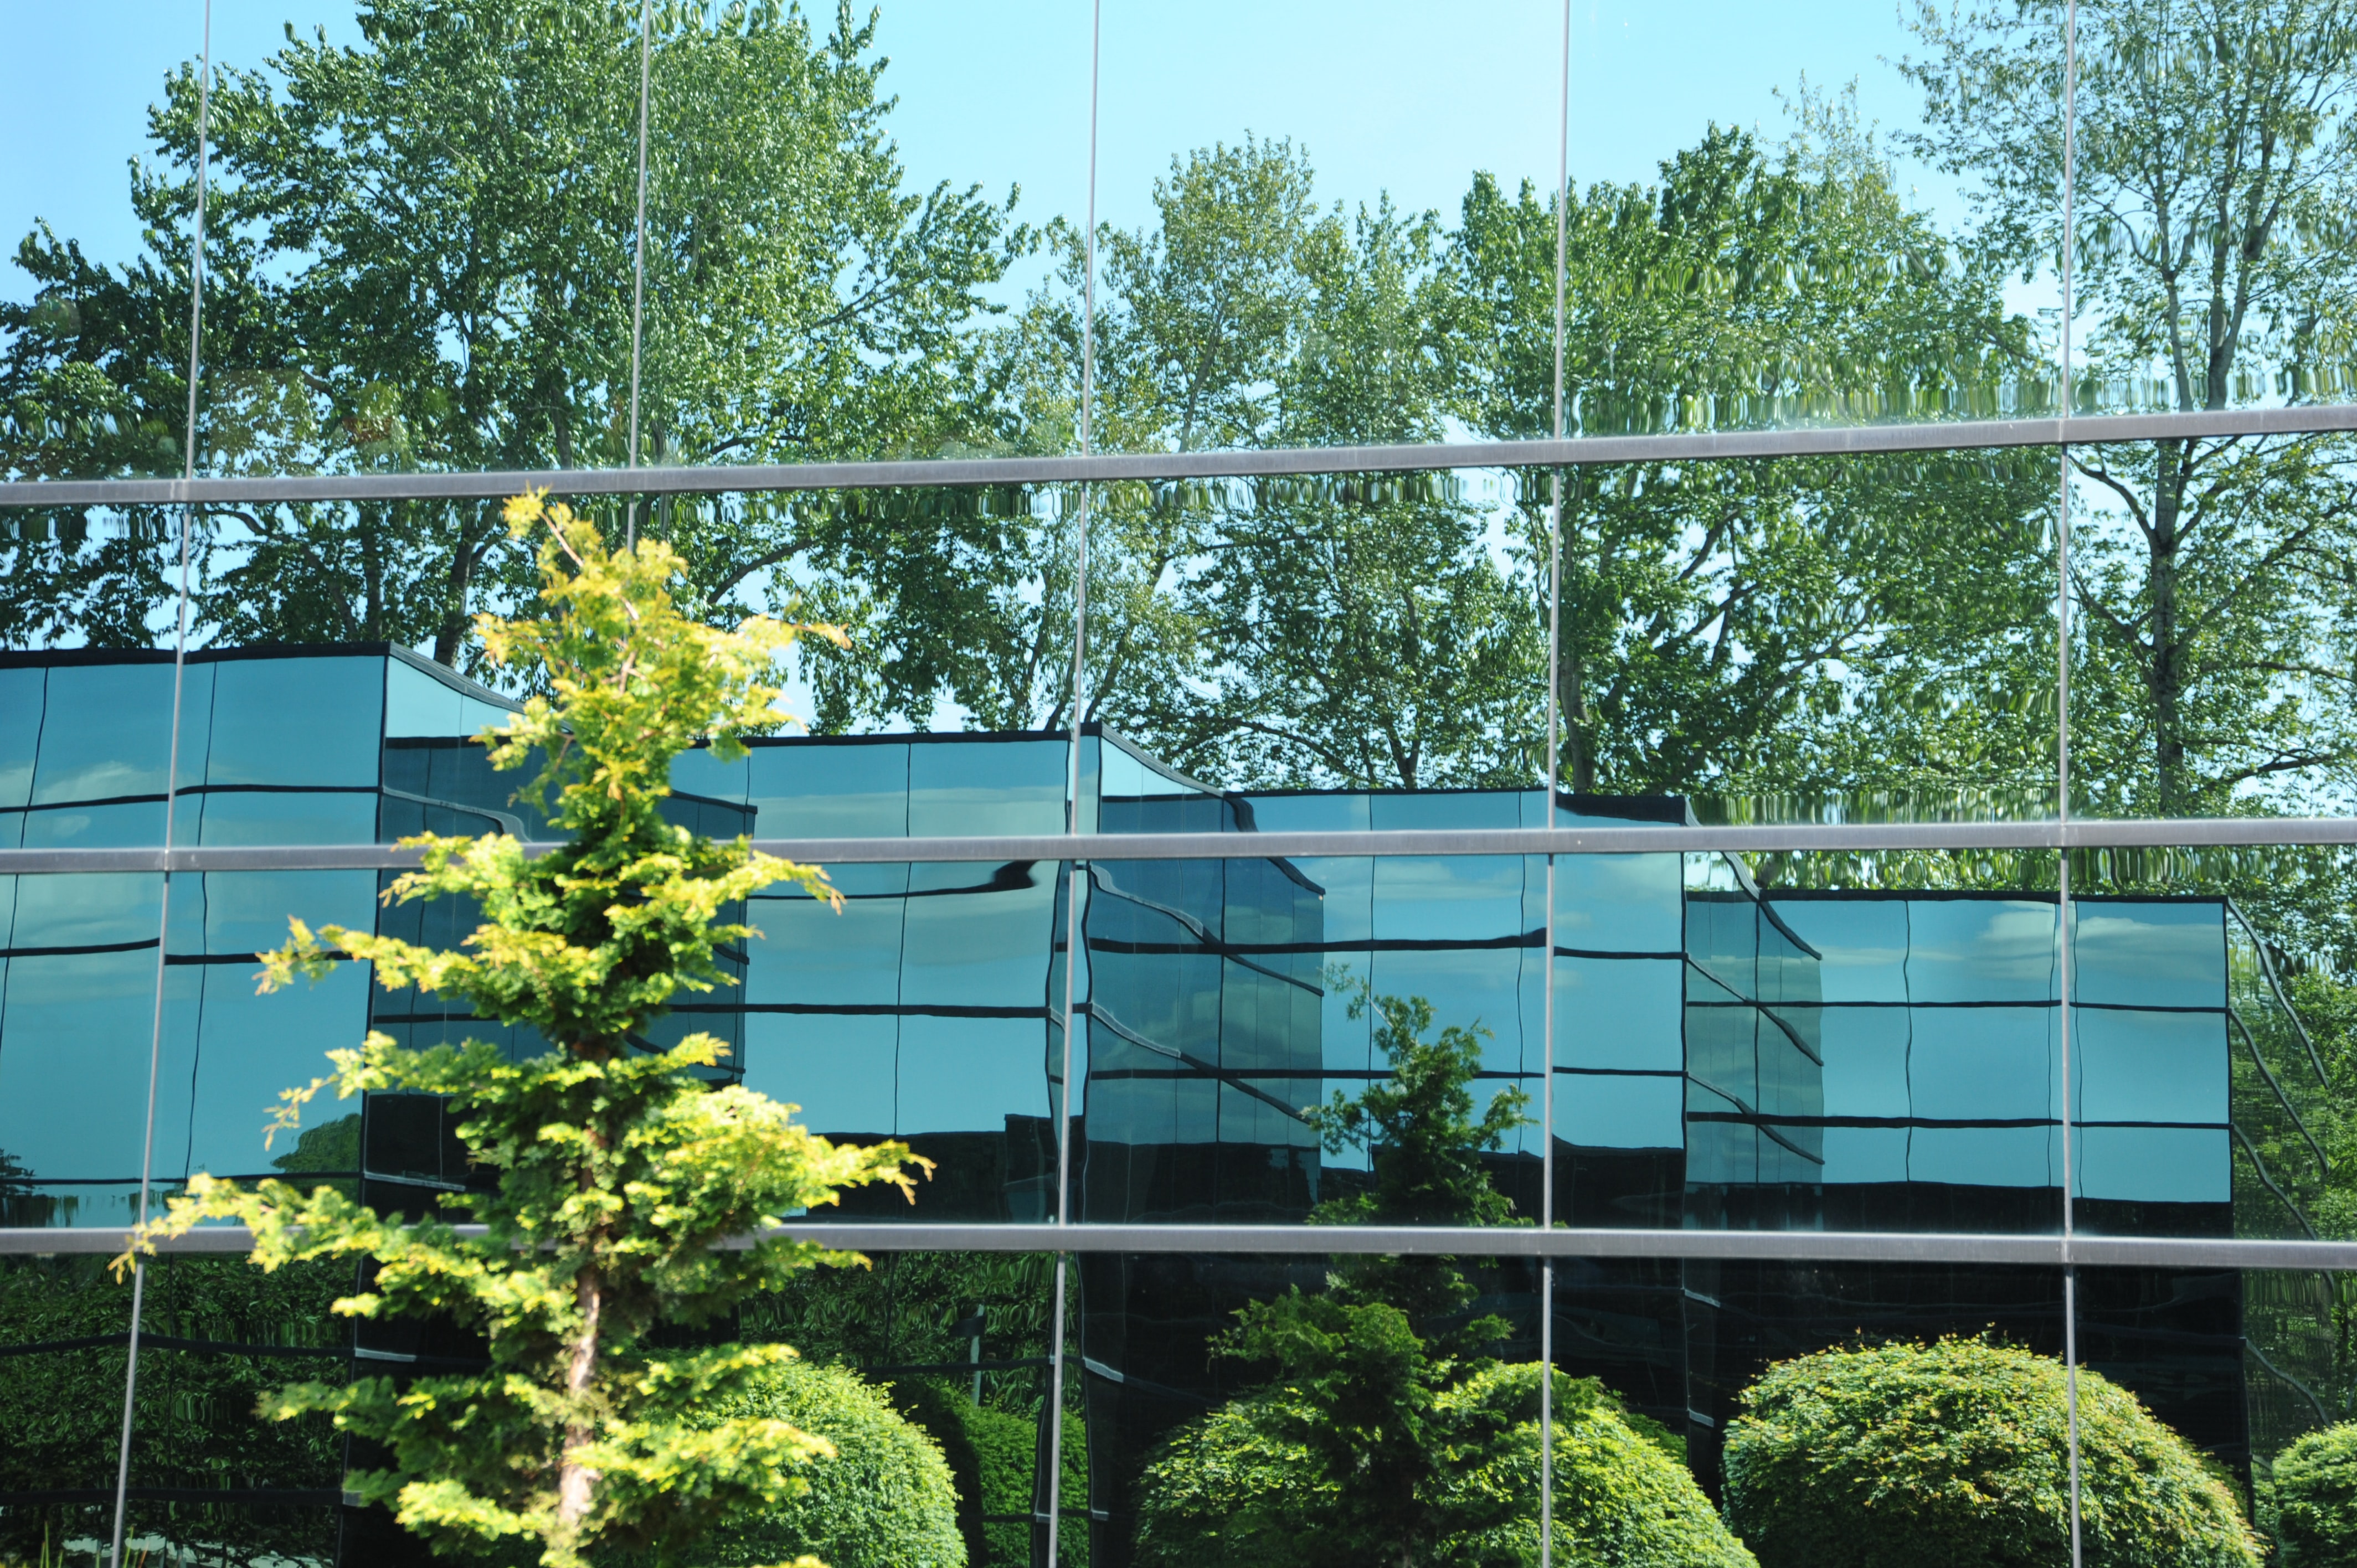 Immeuble de bureaux en verre reflétant un jardin et des arbres. SCPI labelisées ISR.